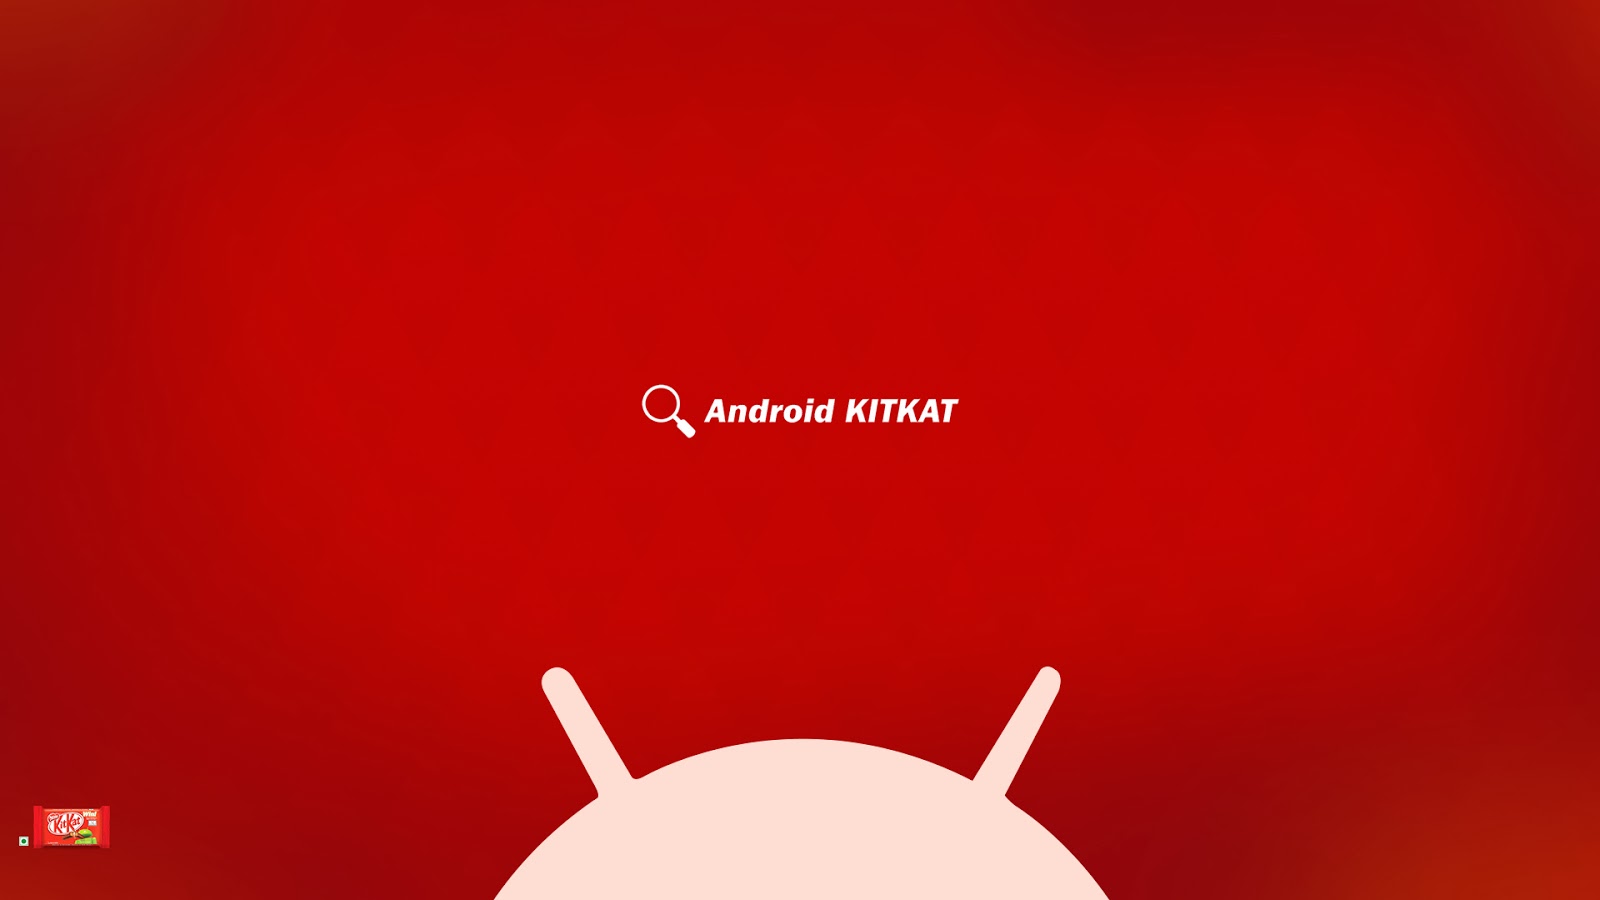 Android Kit Kat Wallpaper for Desktop